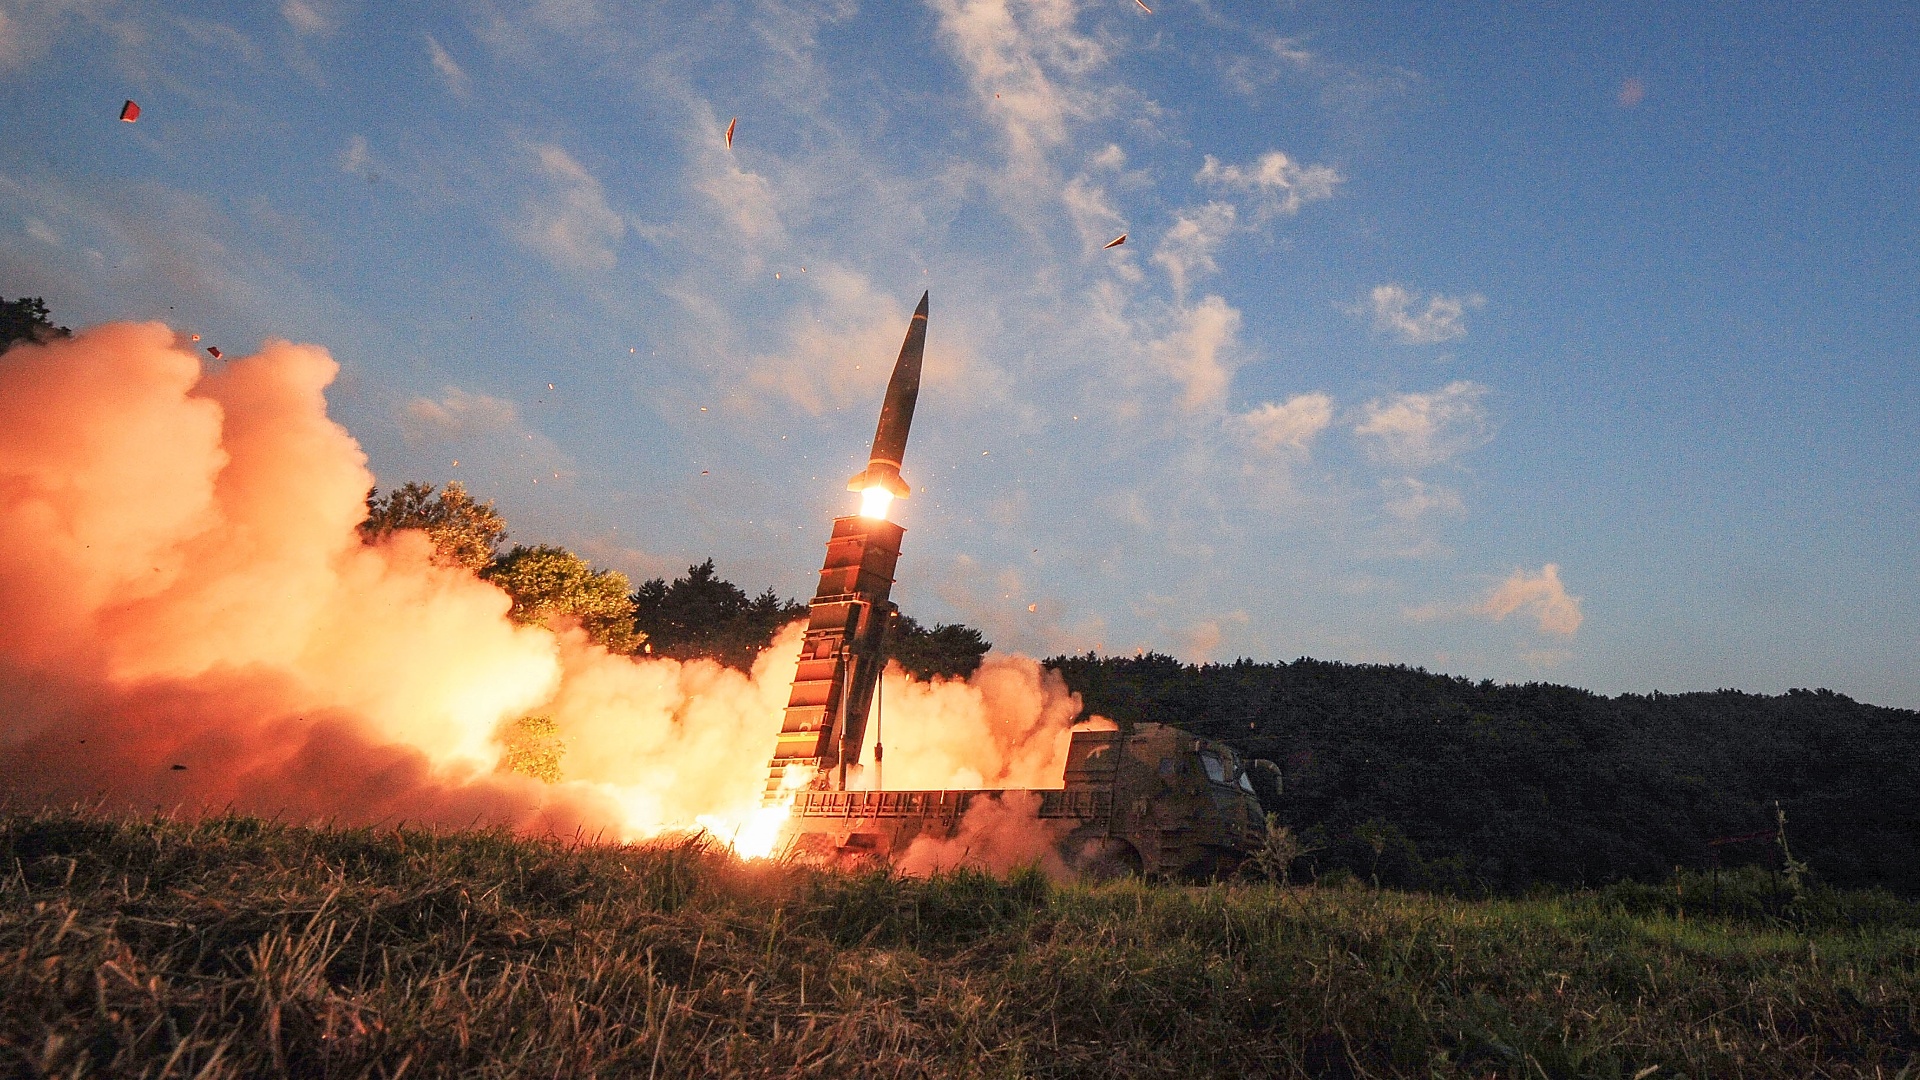 Япония: запущенная Северной Кореей ракета способна достичь США